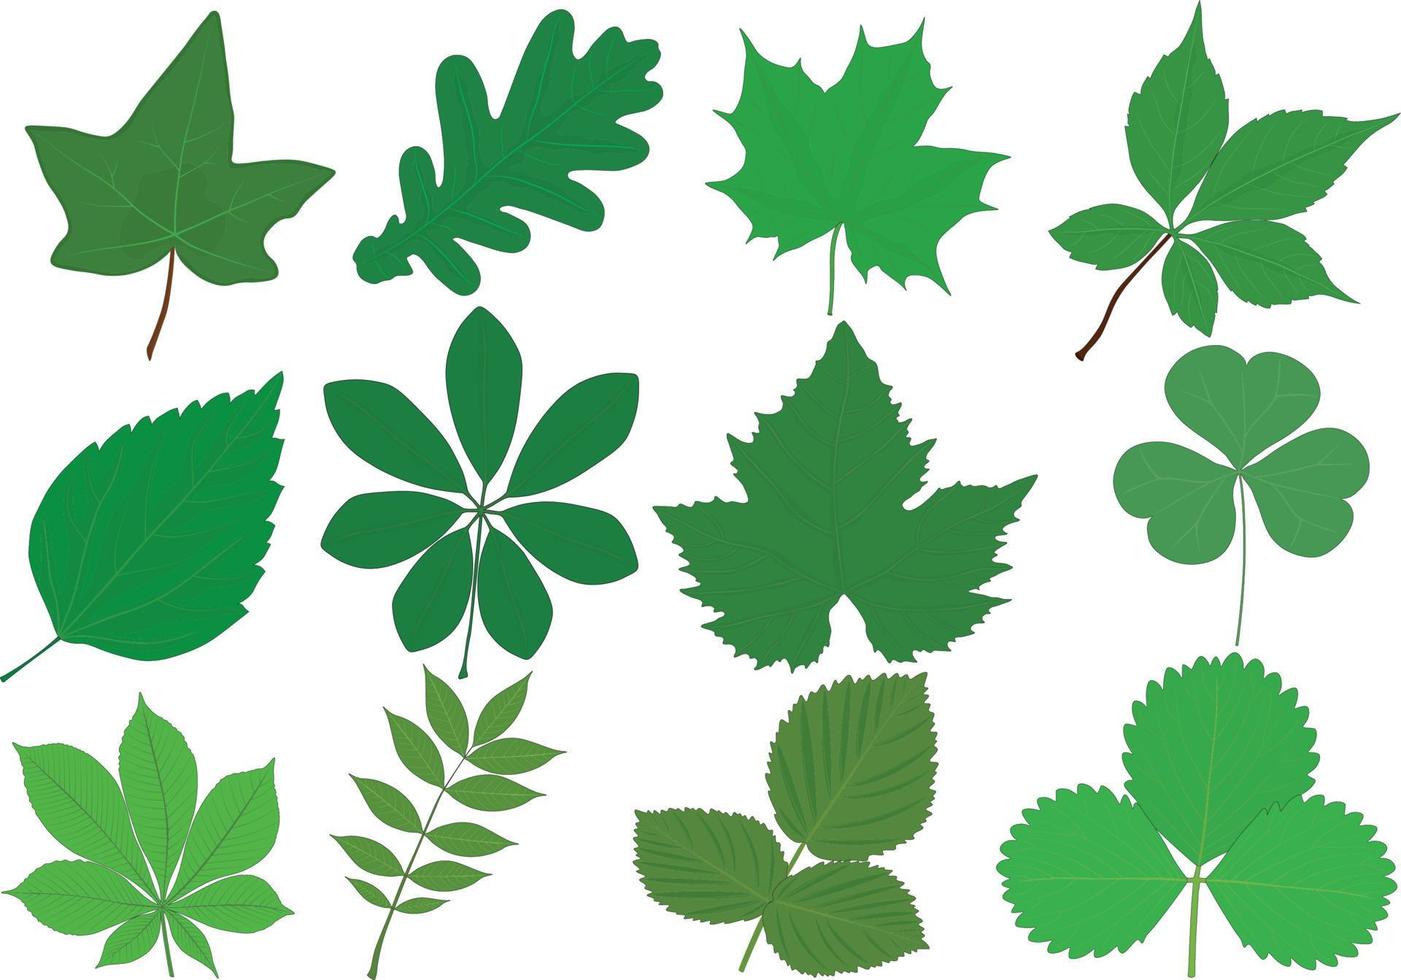 Différentes plantes feuilles vertes collection vector illustration